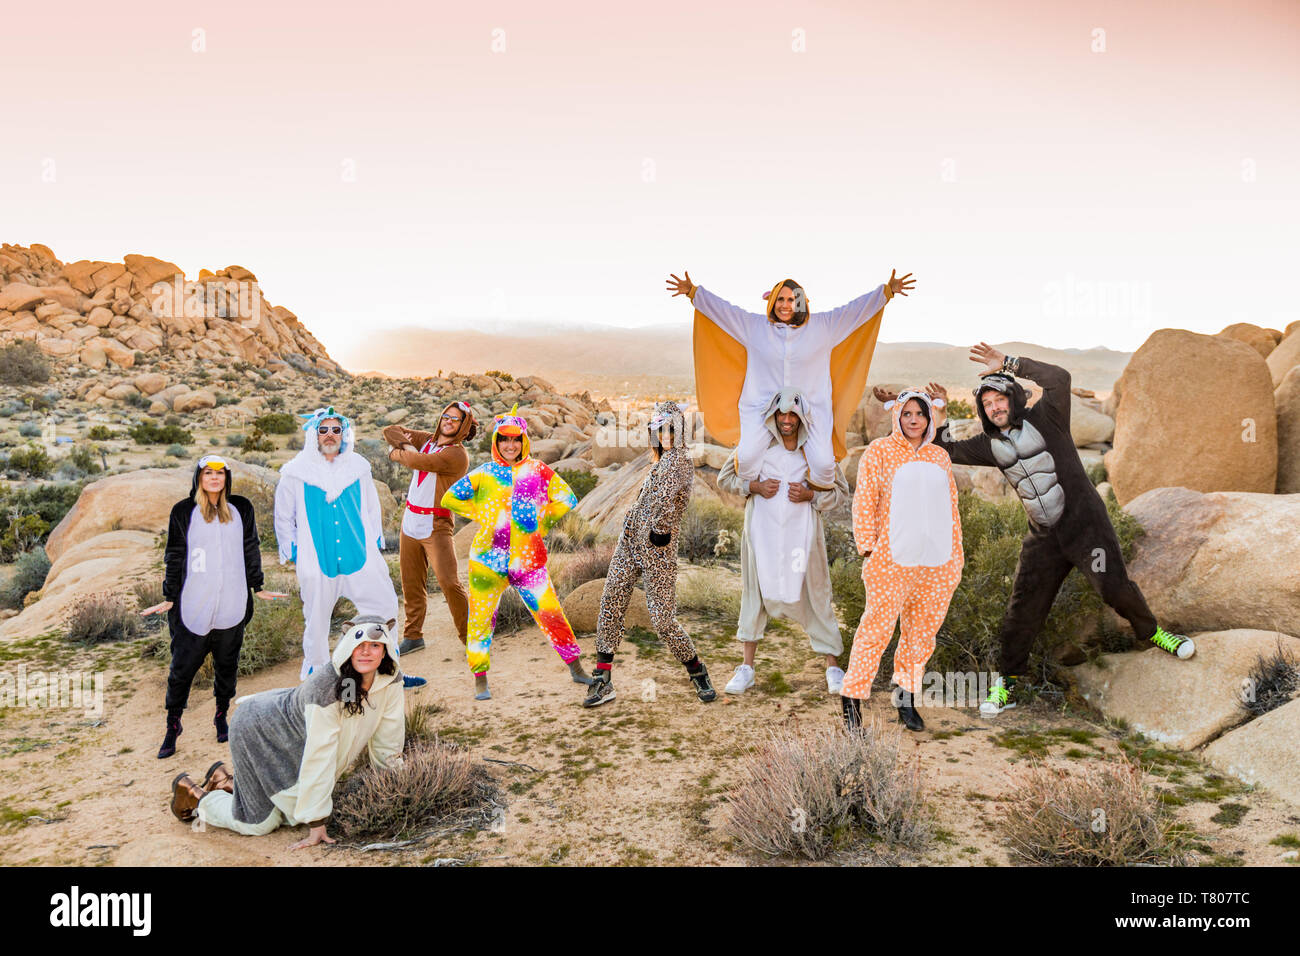 Eine Gruppe von Freunden im Geiste Tier onesies feiern das neue Jahr in Joshua Tree, Kalifornien, Vereinigte Staaten von Amerika, Nordamerika Stockfoto